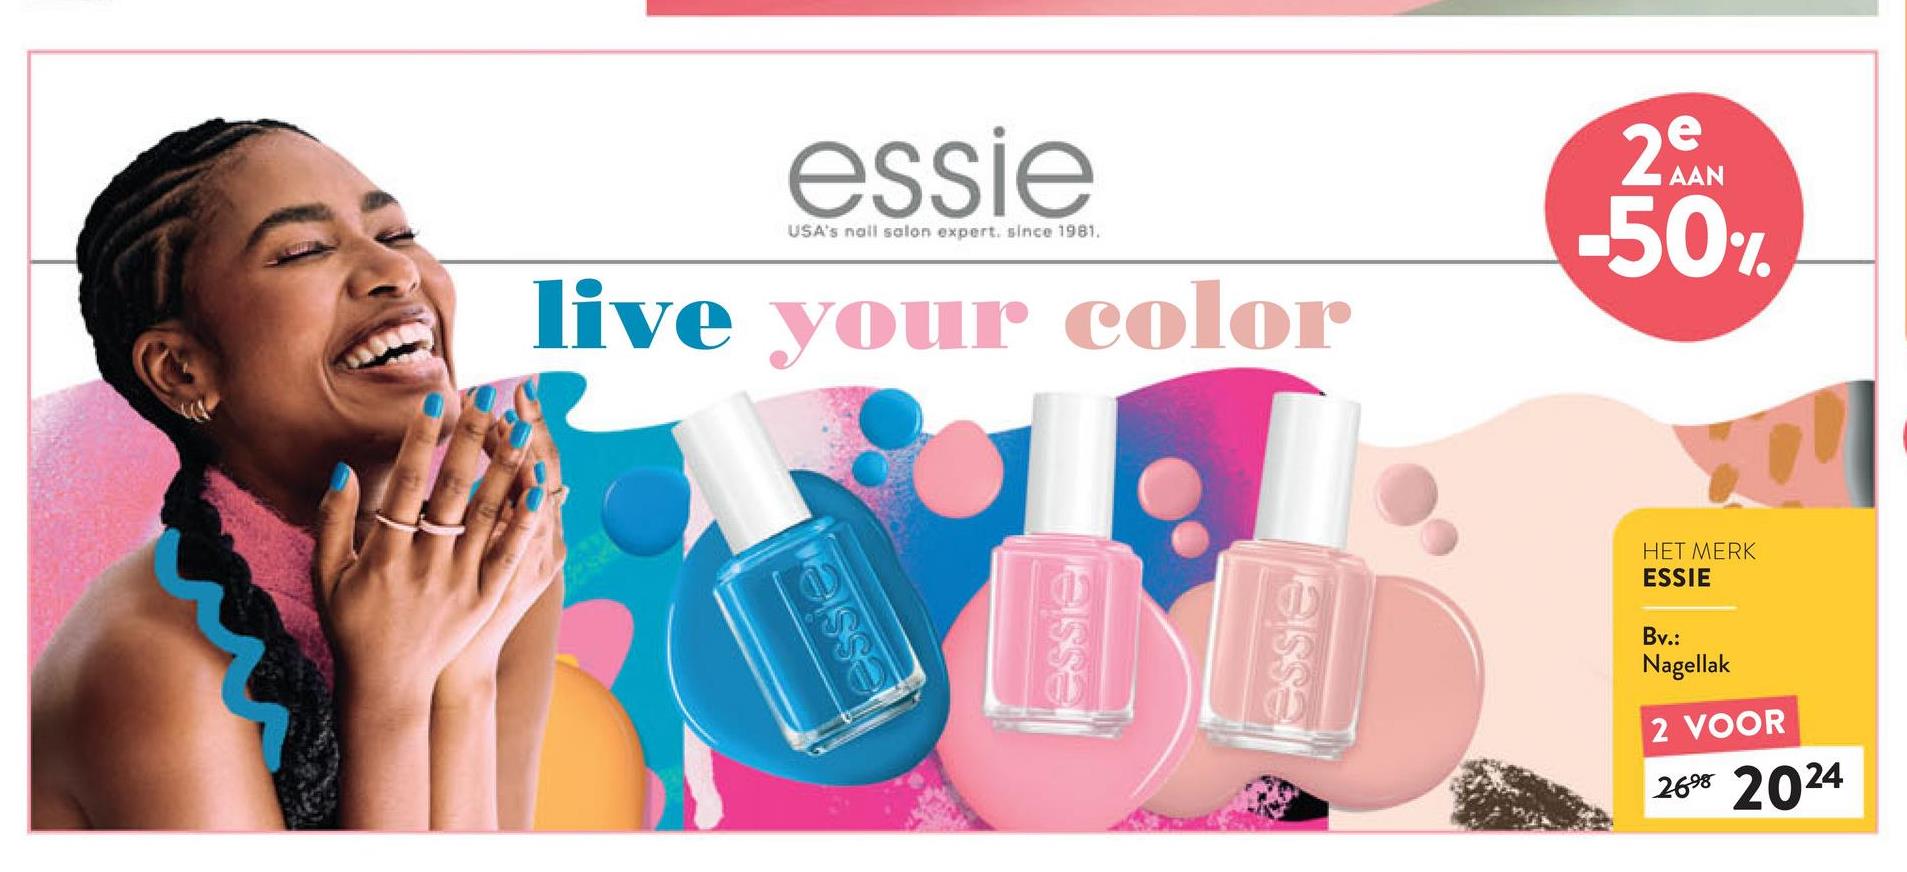 essien
essie
USA's nail salon expert. since 1981.
live your color
AAN
2e
-50%
essie
essie
HET MERK
ESSIE
Bv.:
Nagellak
2 VOOR
2698 2024